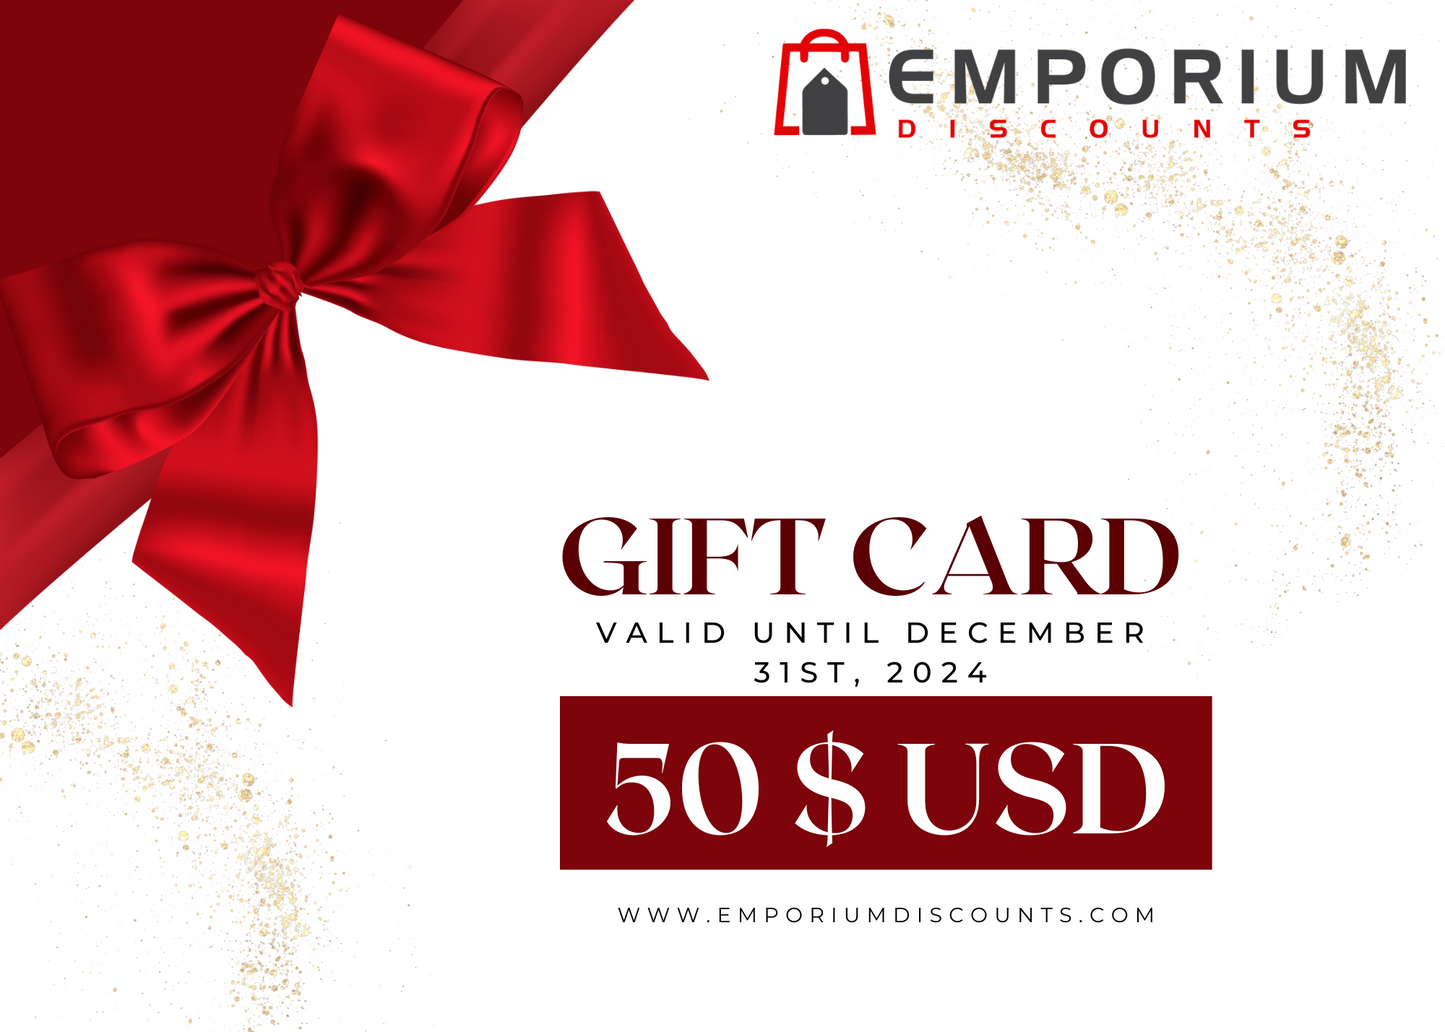 Emporium Discounts Gift Card